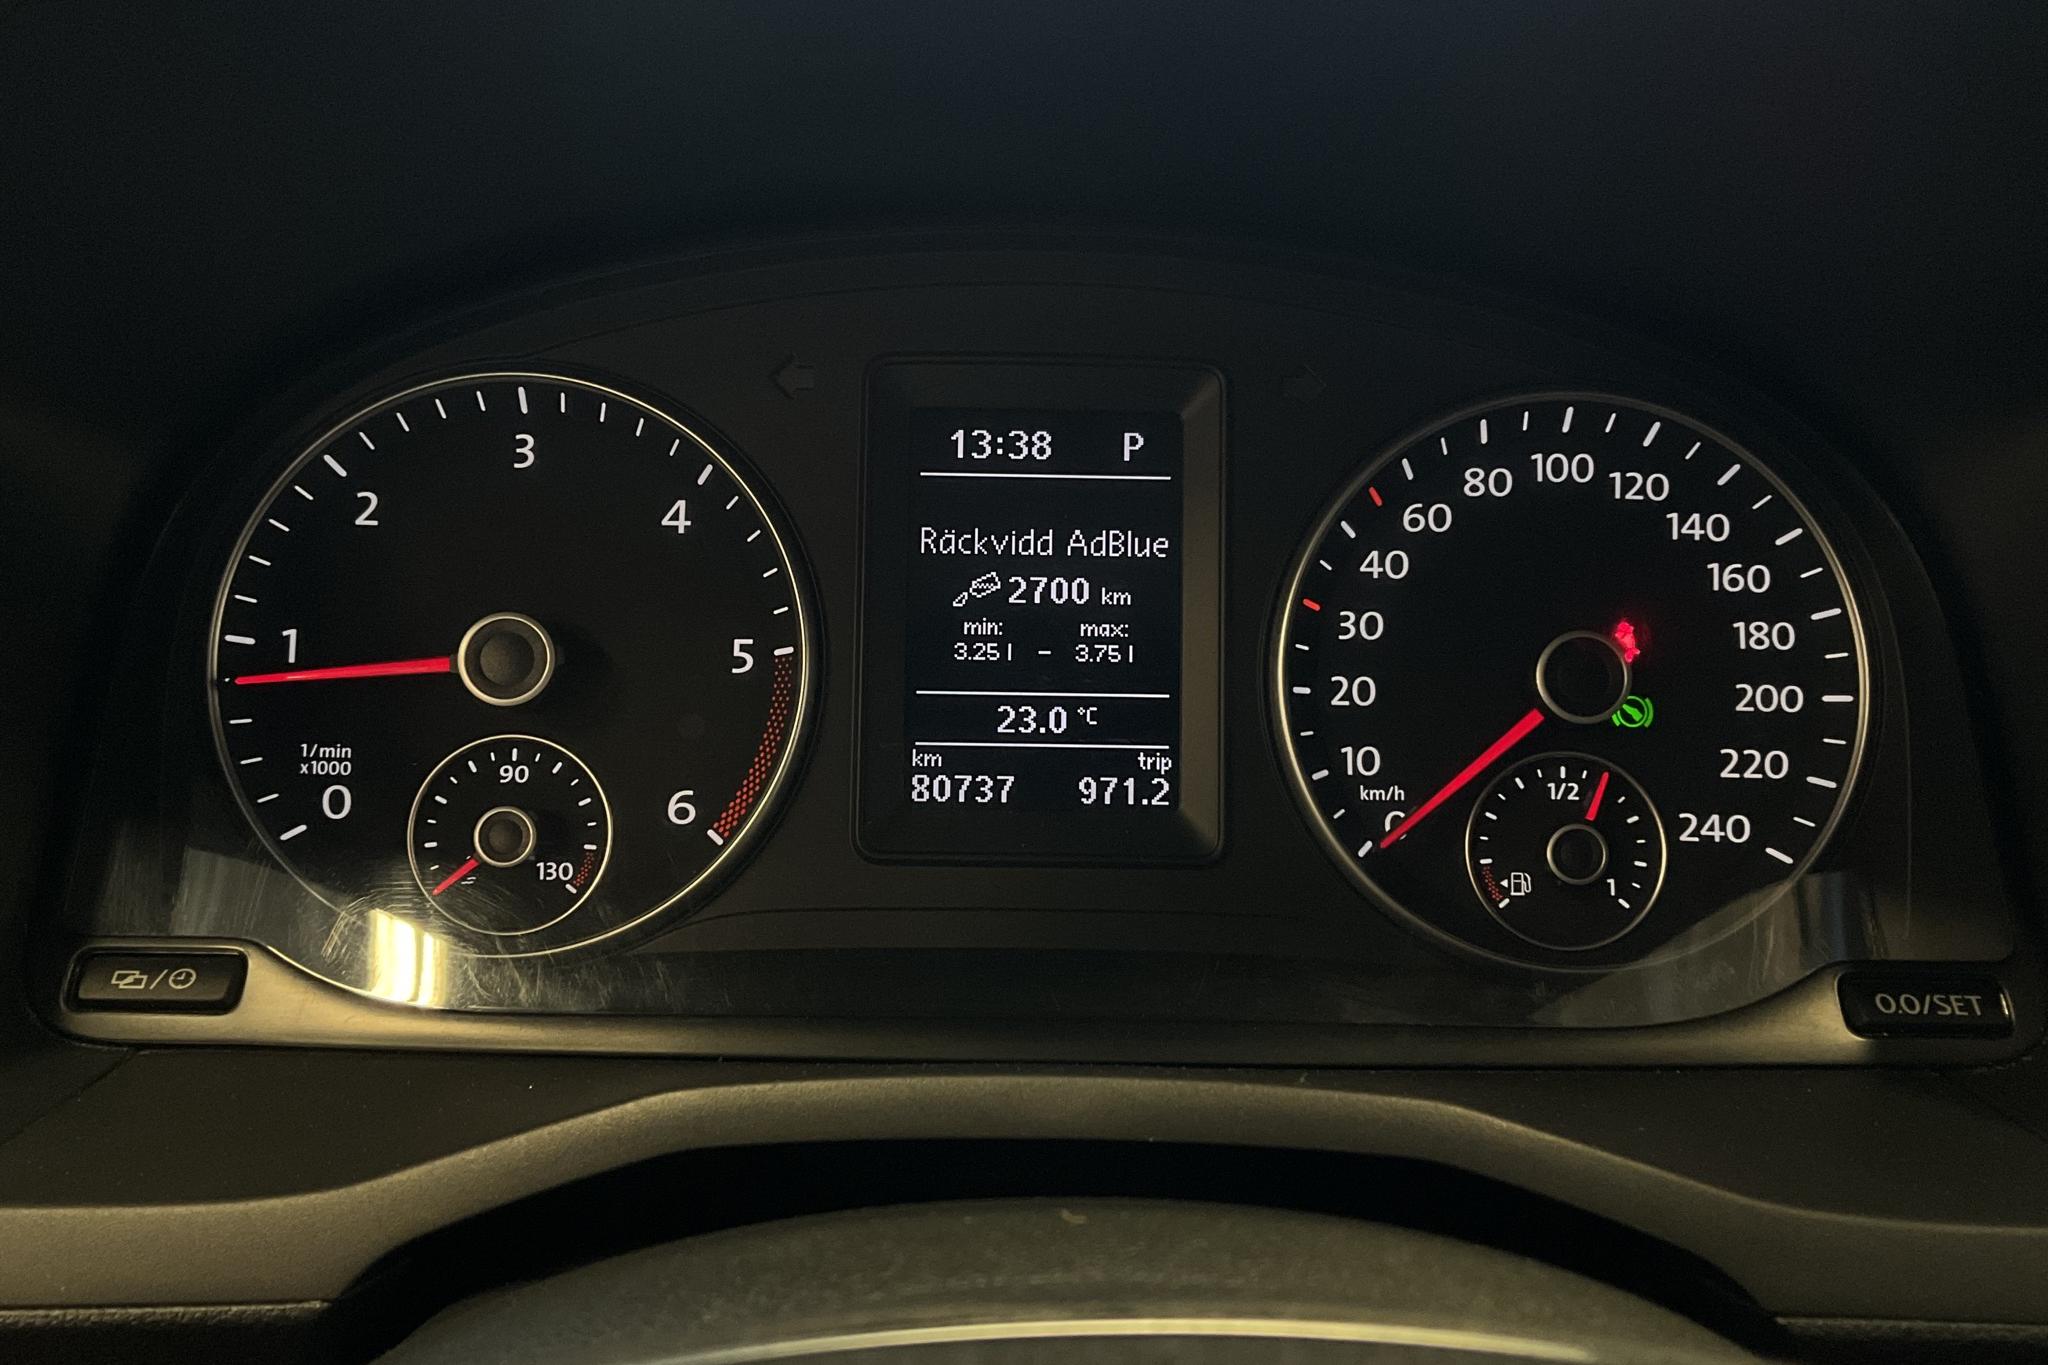 VW Caddy Maxi 2.0 TDI (102hk) - 8 073 mil - Automat - vit - 2020